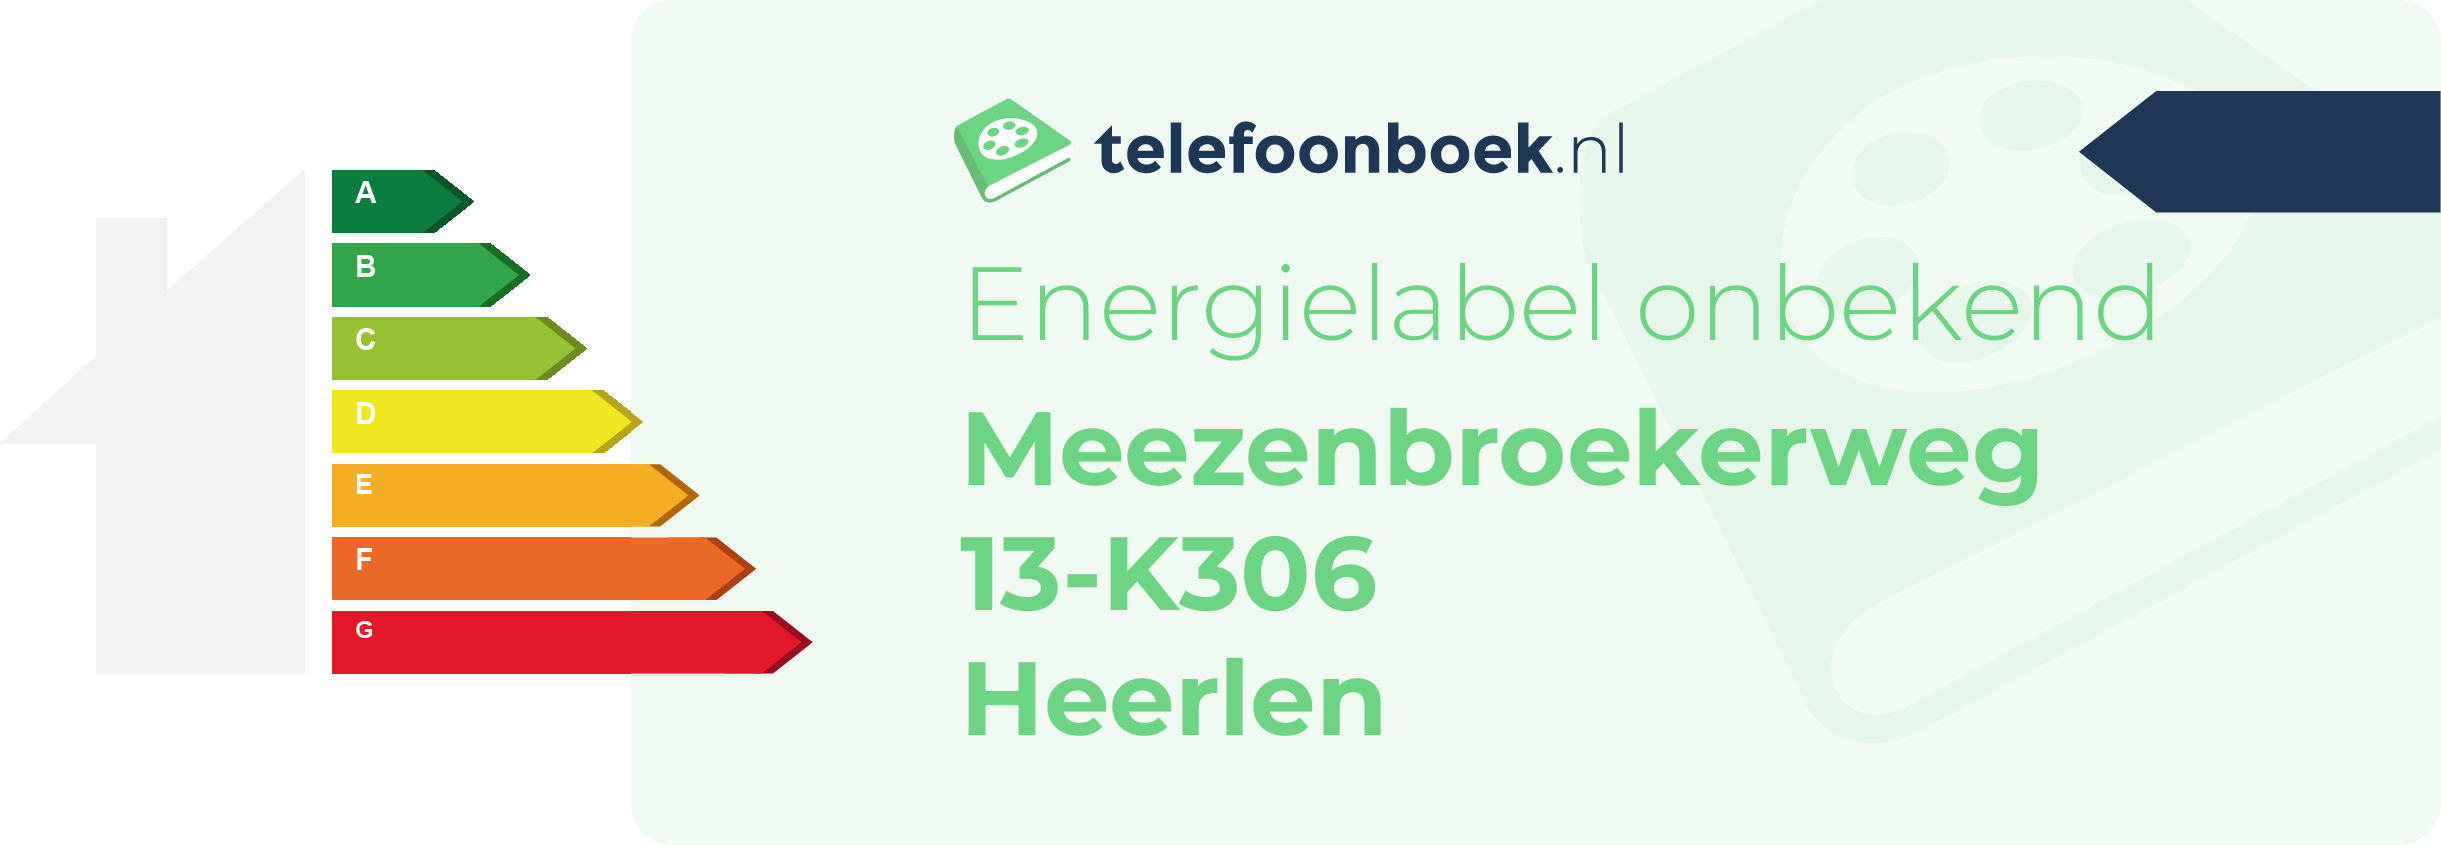 Energielabel Meezenbroekerweg 13-K306 Heerlen